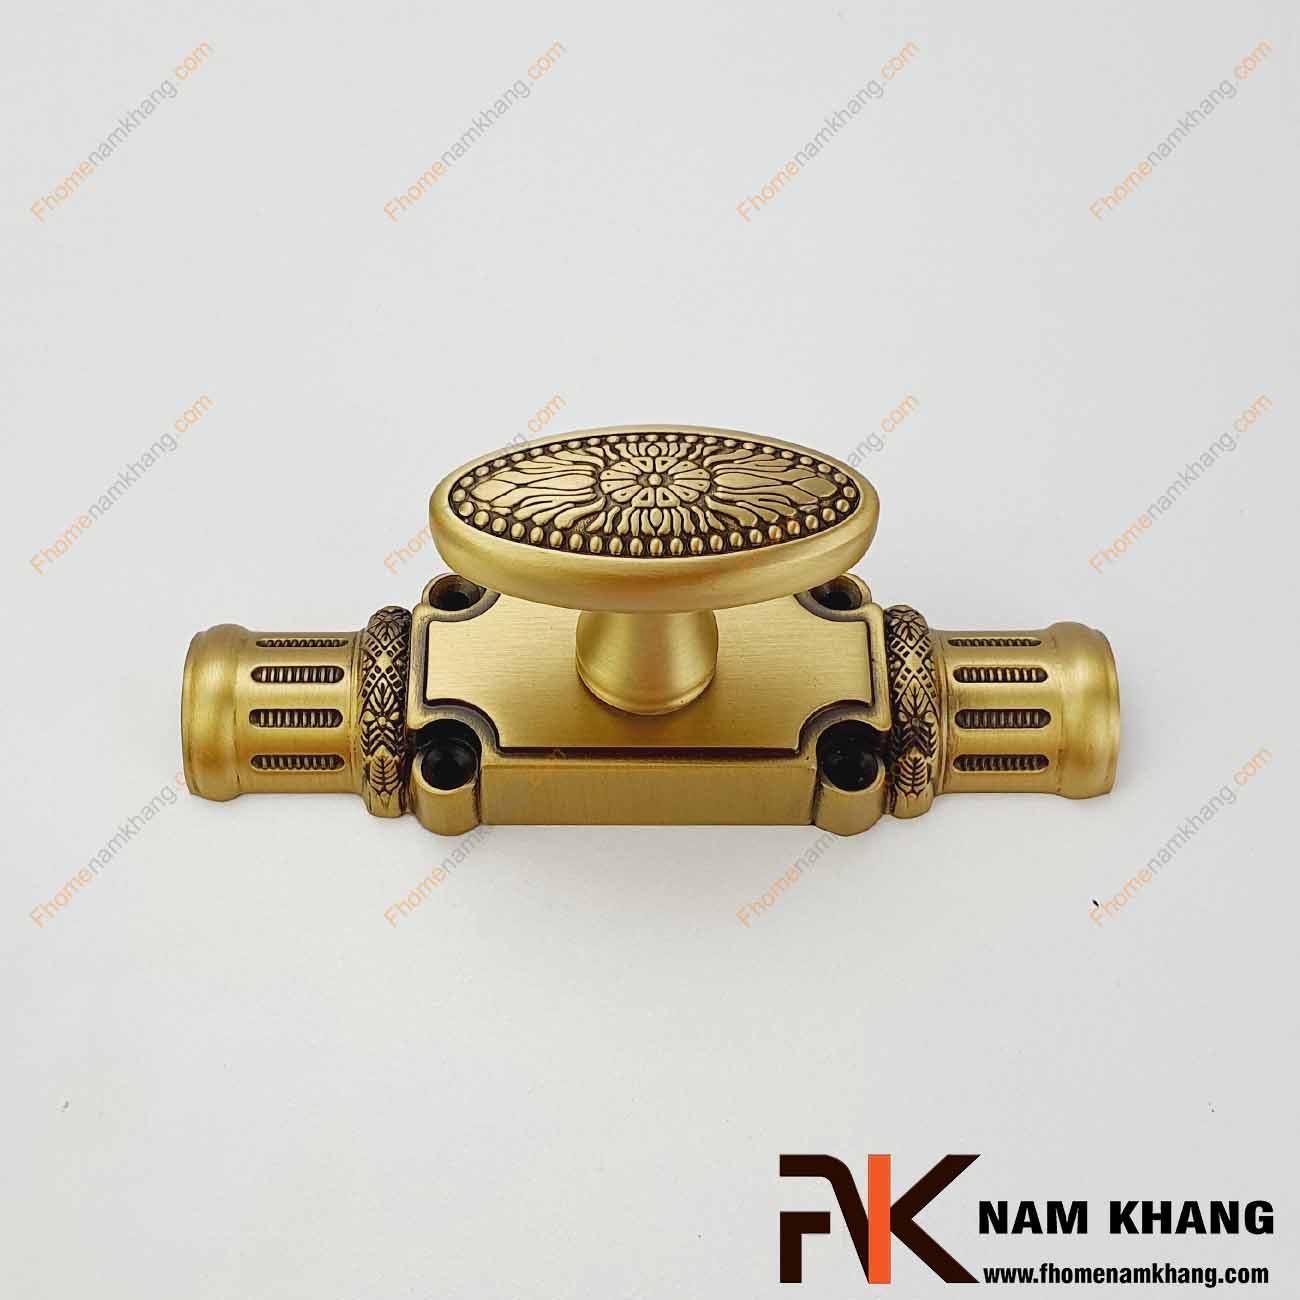 Chốt cửa clemon NK187KE-OR (Size nhỏ, Màu Đồng Vàng)